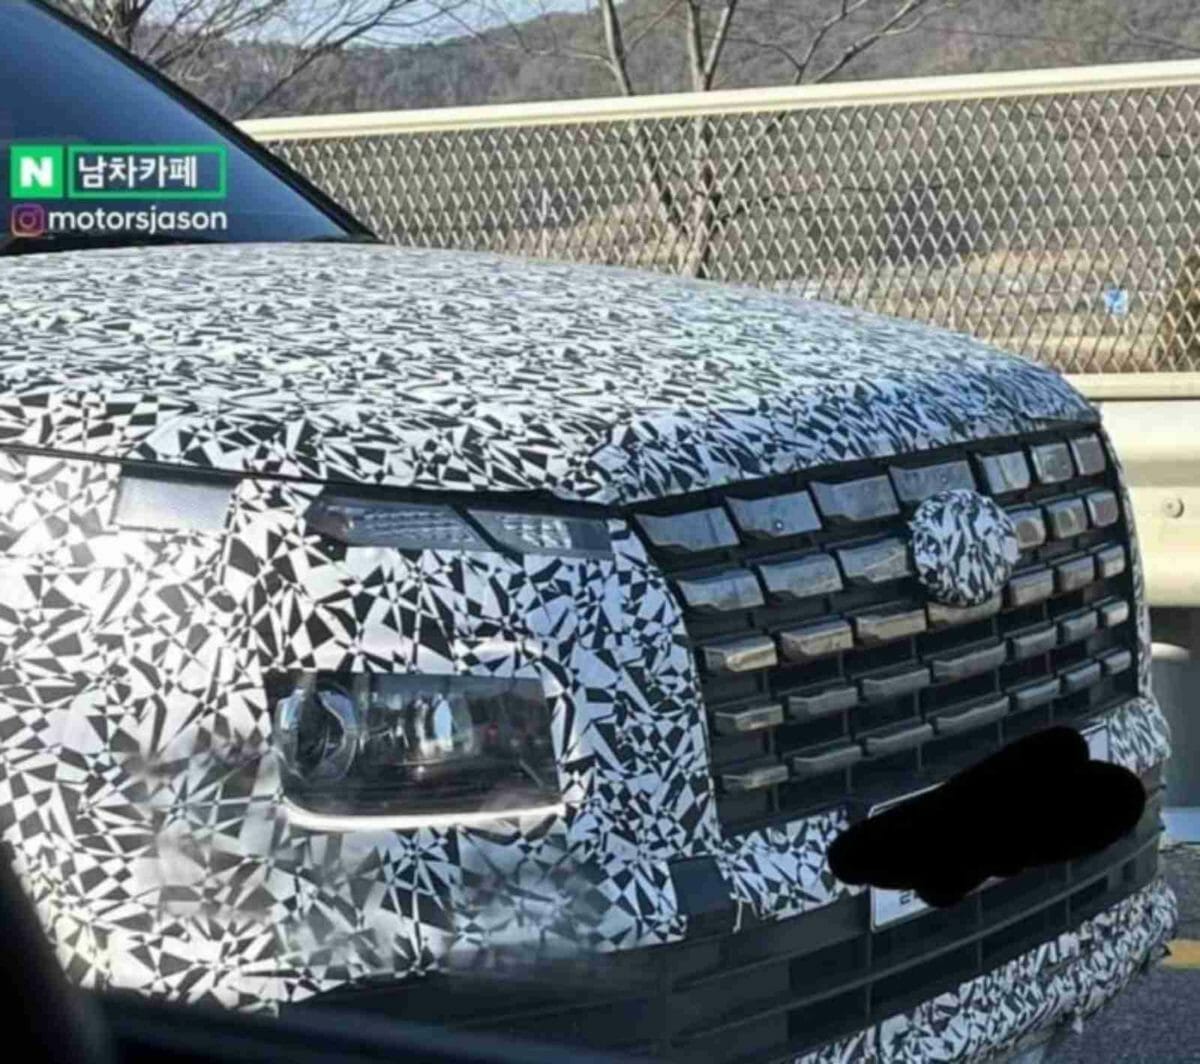 2022 Hyundai Venue spy shot reveals details